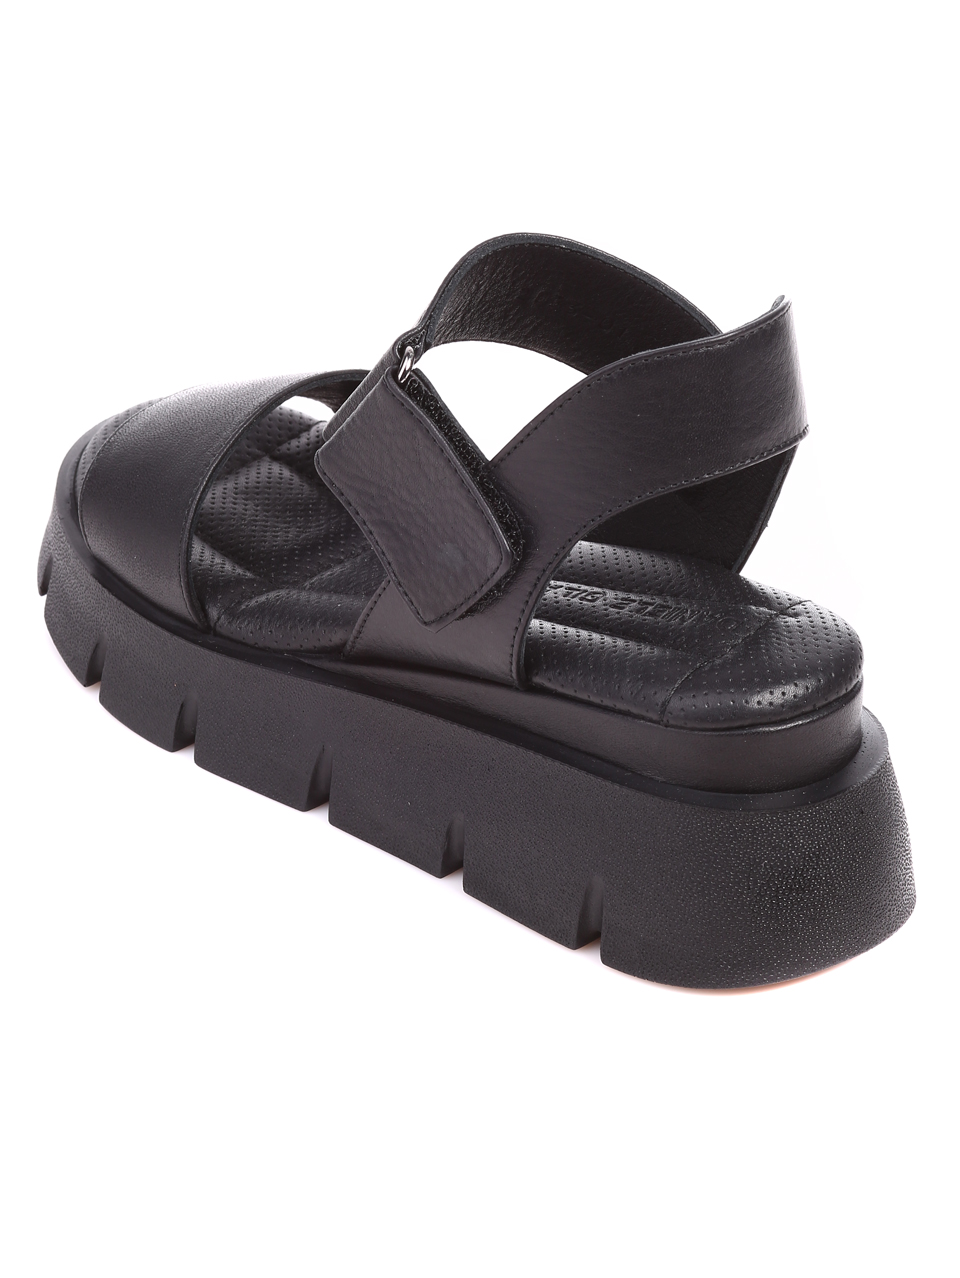 Ежедневни дамски комфортни сандали на платофрма от естествена кожа 4AT-23327 black (22345)